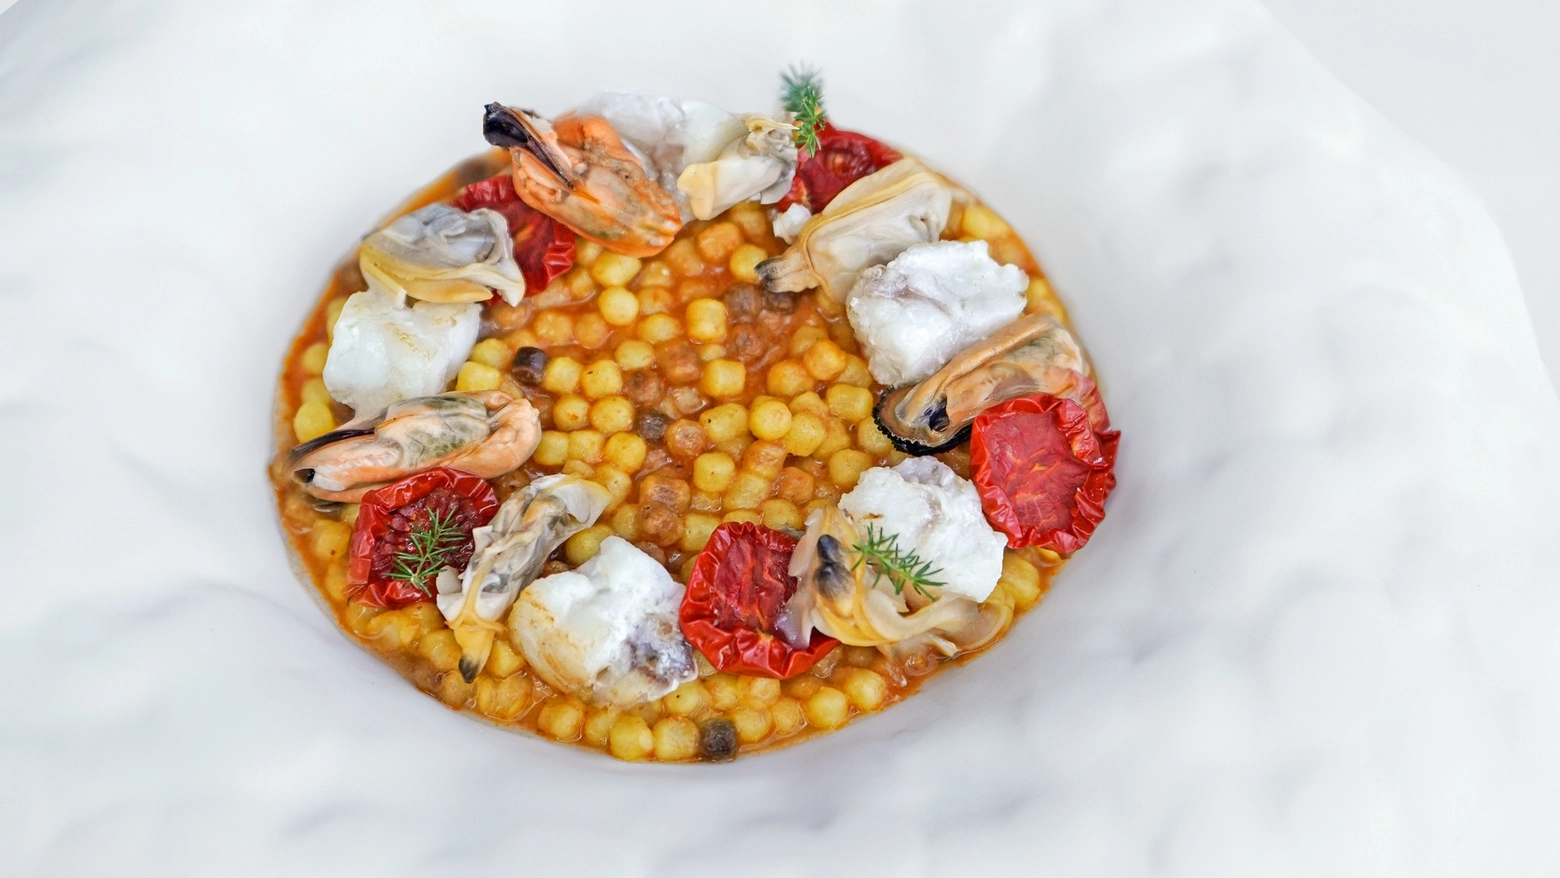 Una ricetta della tradizione nella versione fine dining proposta da Gianluca Braglia, executive chef del ristorante Il Paguro di Palau